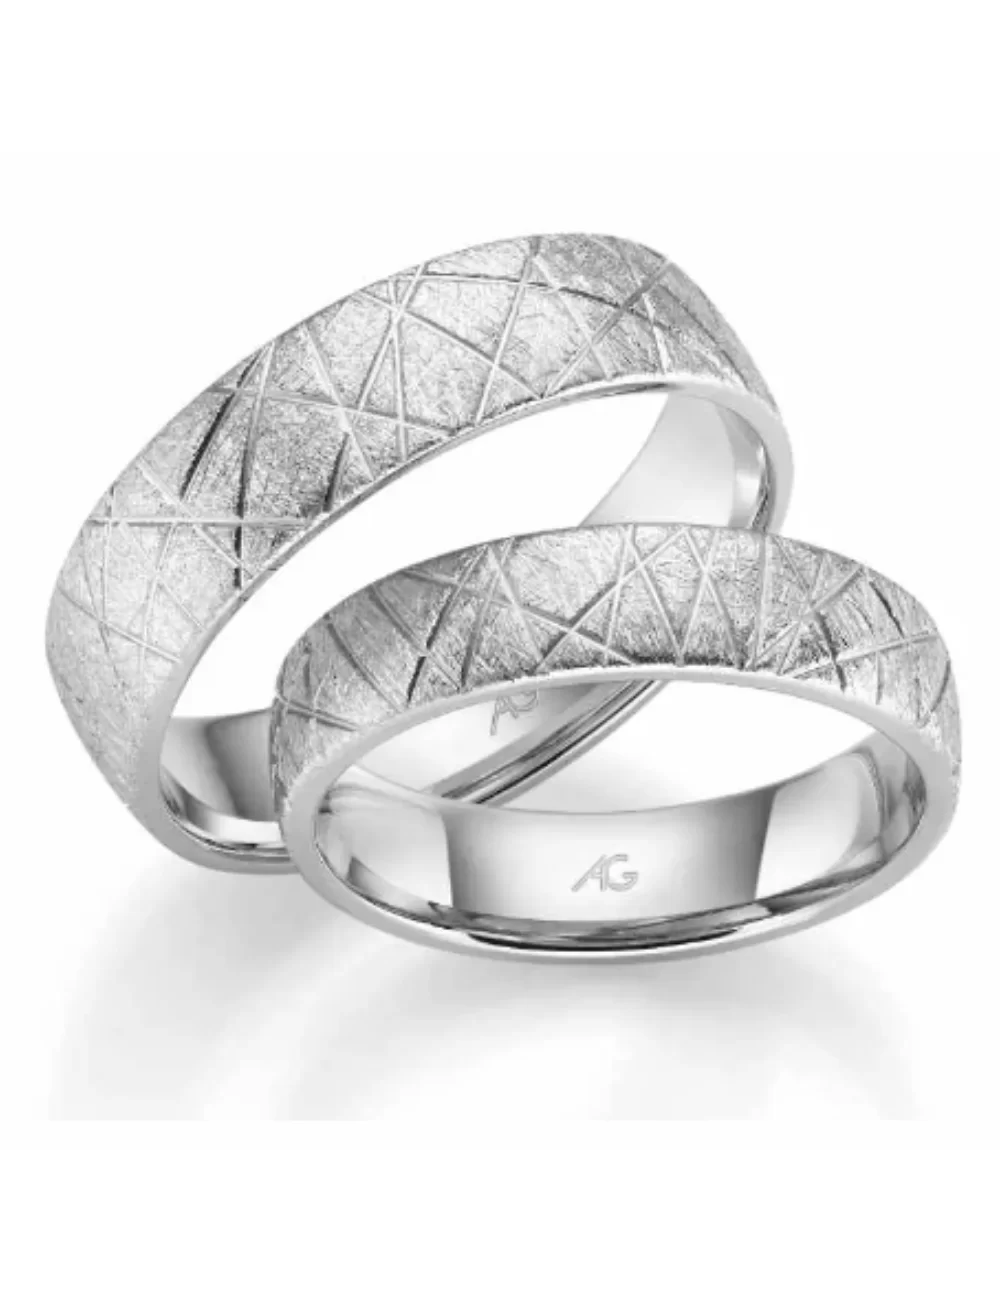 Matinis vestuvinis žiedas be deimantu - Raštai VI